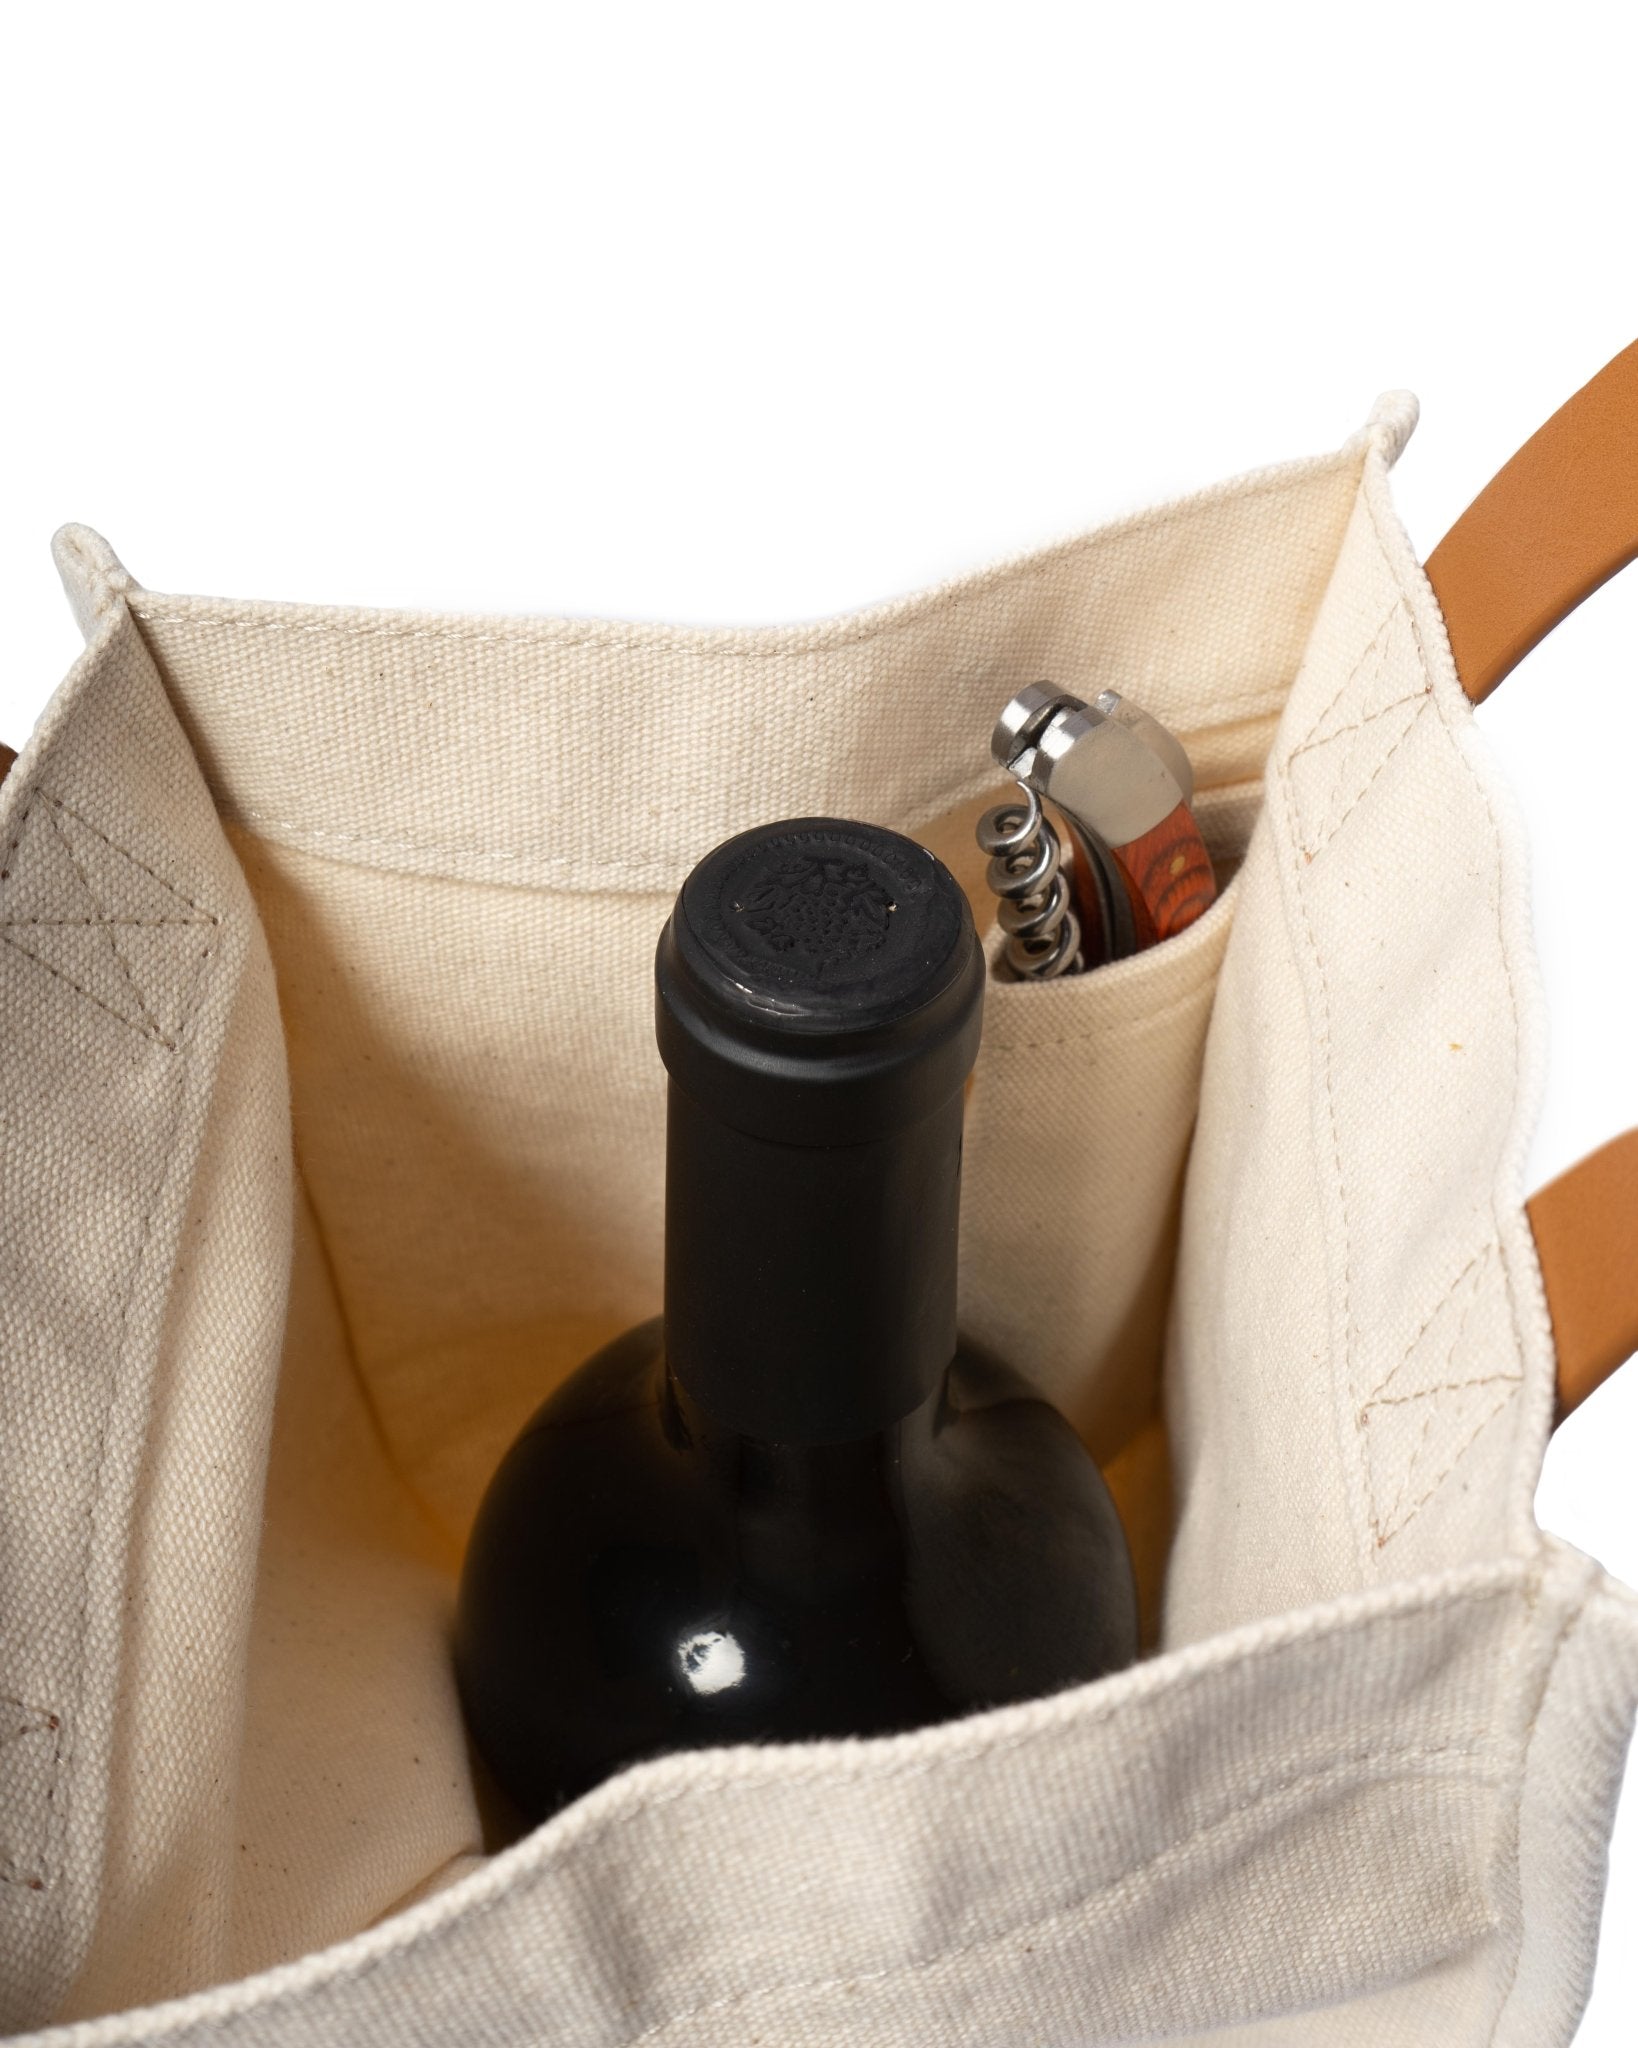 Cheers Burlap Wine Bag - Everything Bags Inc.